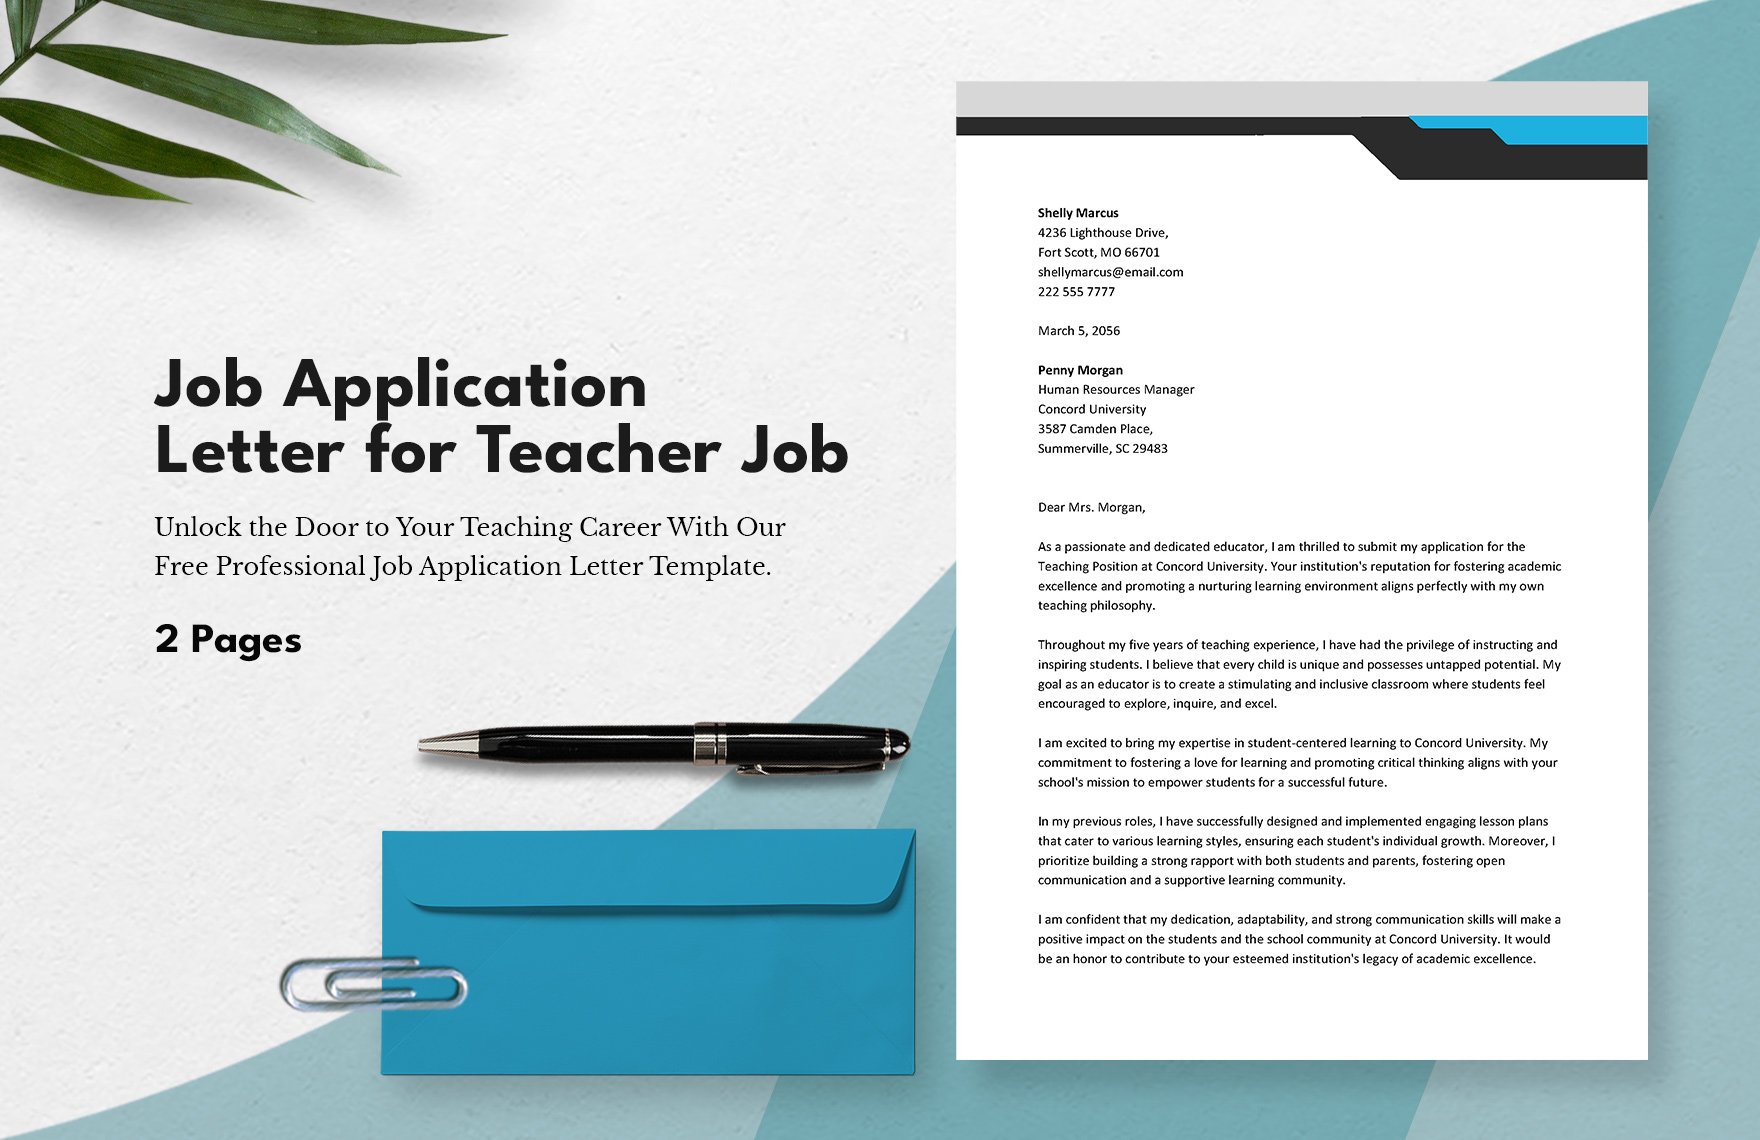 Job Application Letter for Teacher Job